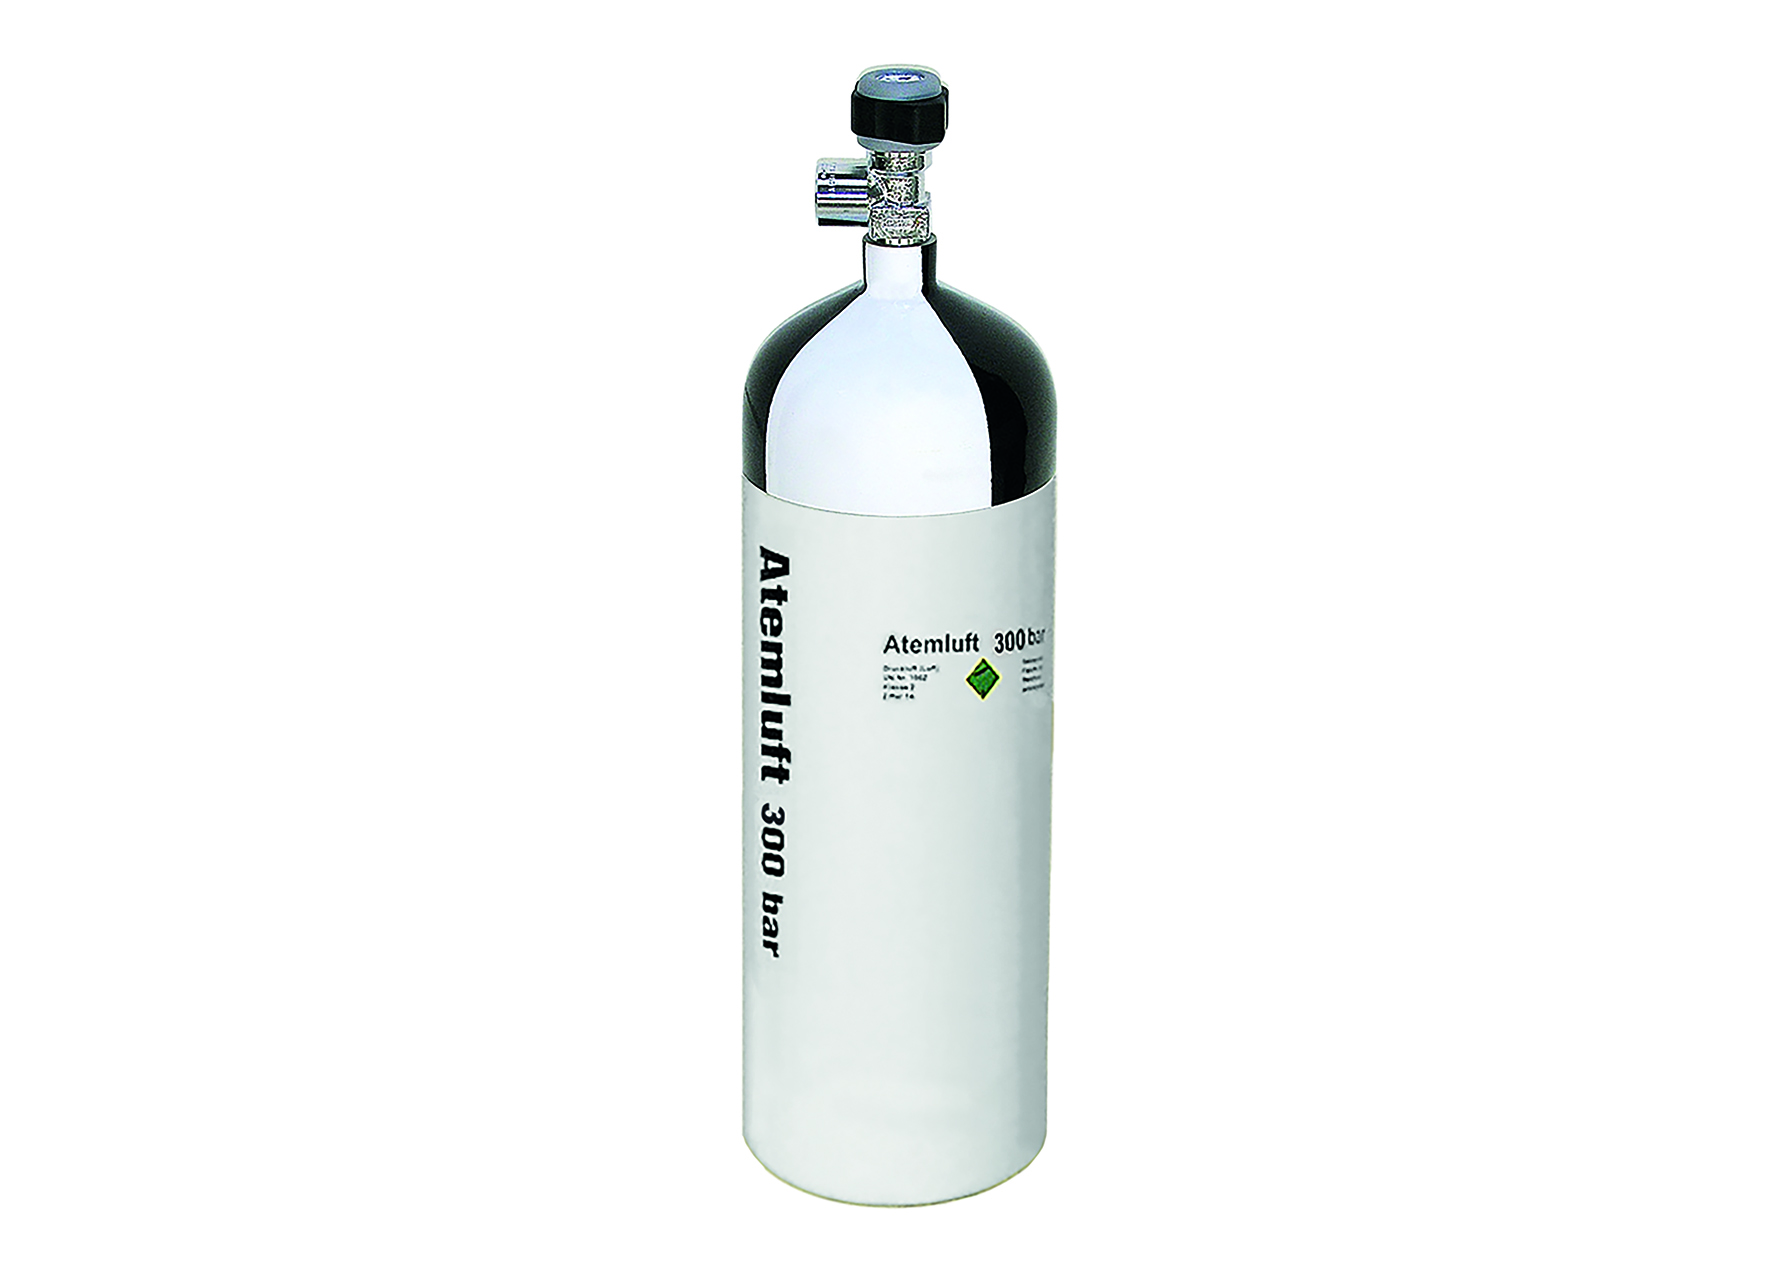 Atemluft-Stahlflasche mit 2 l Fassungsvermögen und 300 bar Fülldruck